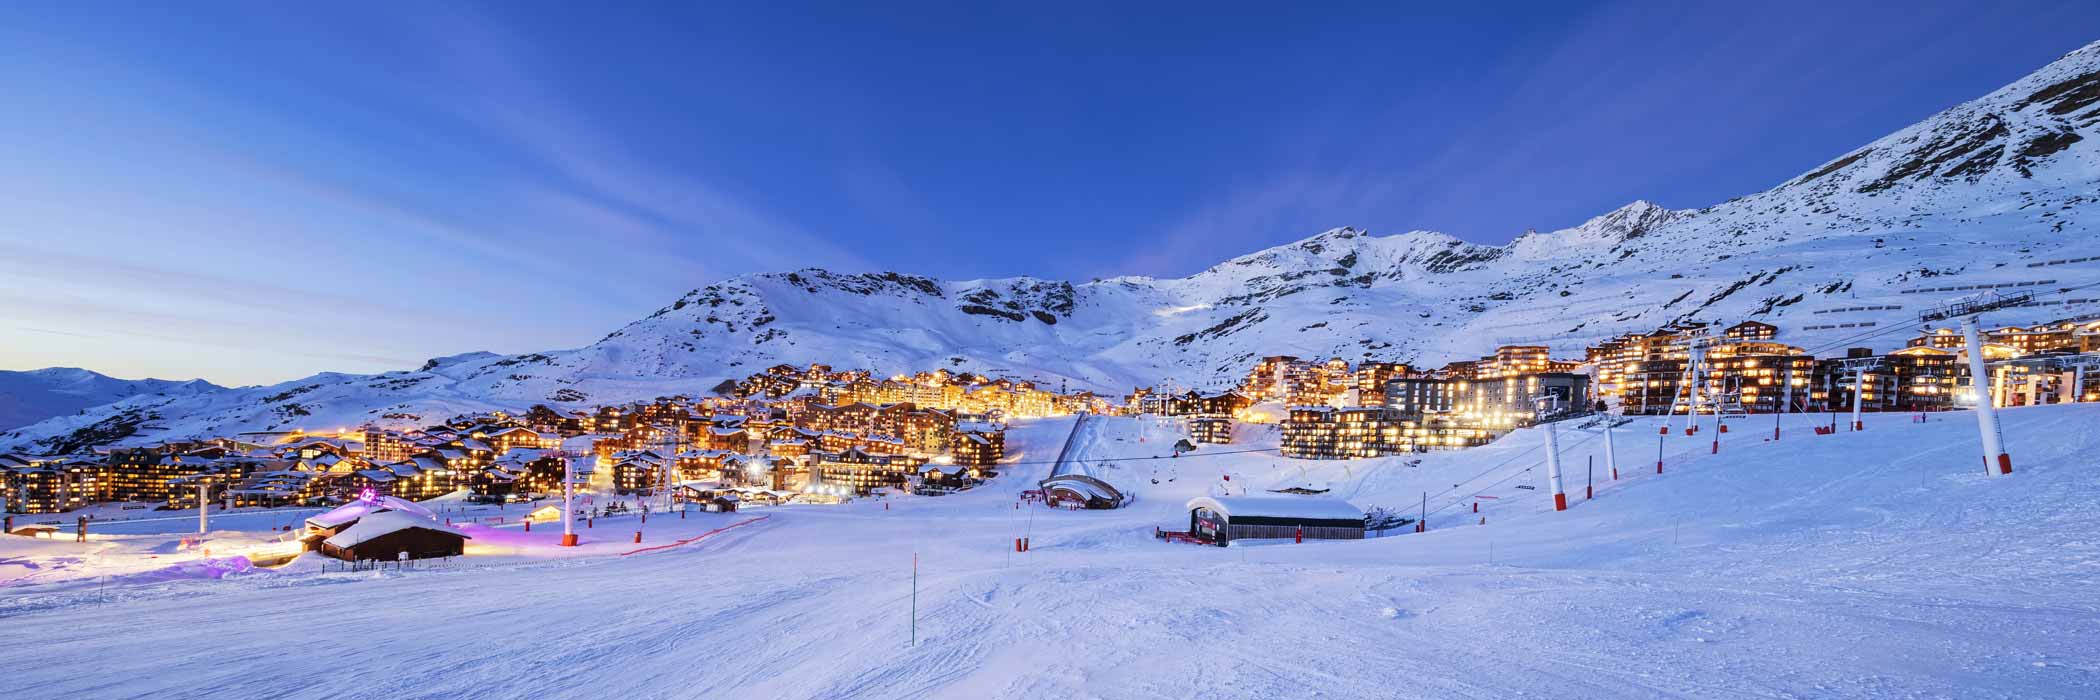 Crystal Ski Holidays - Val Thorens Ski Resort in France